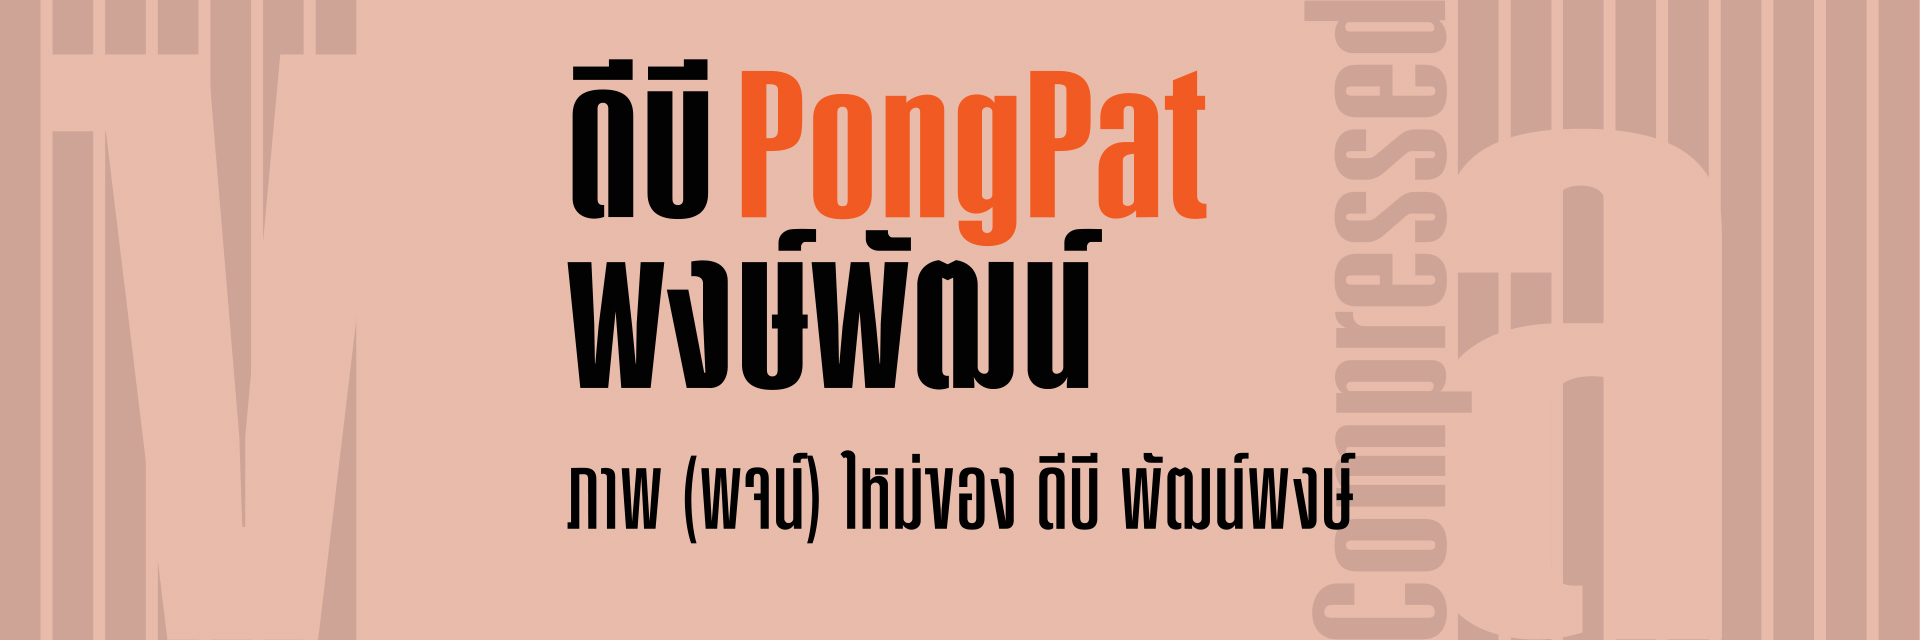 DB PongPat